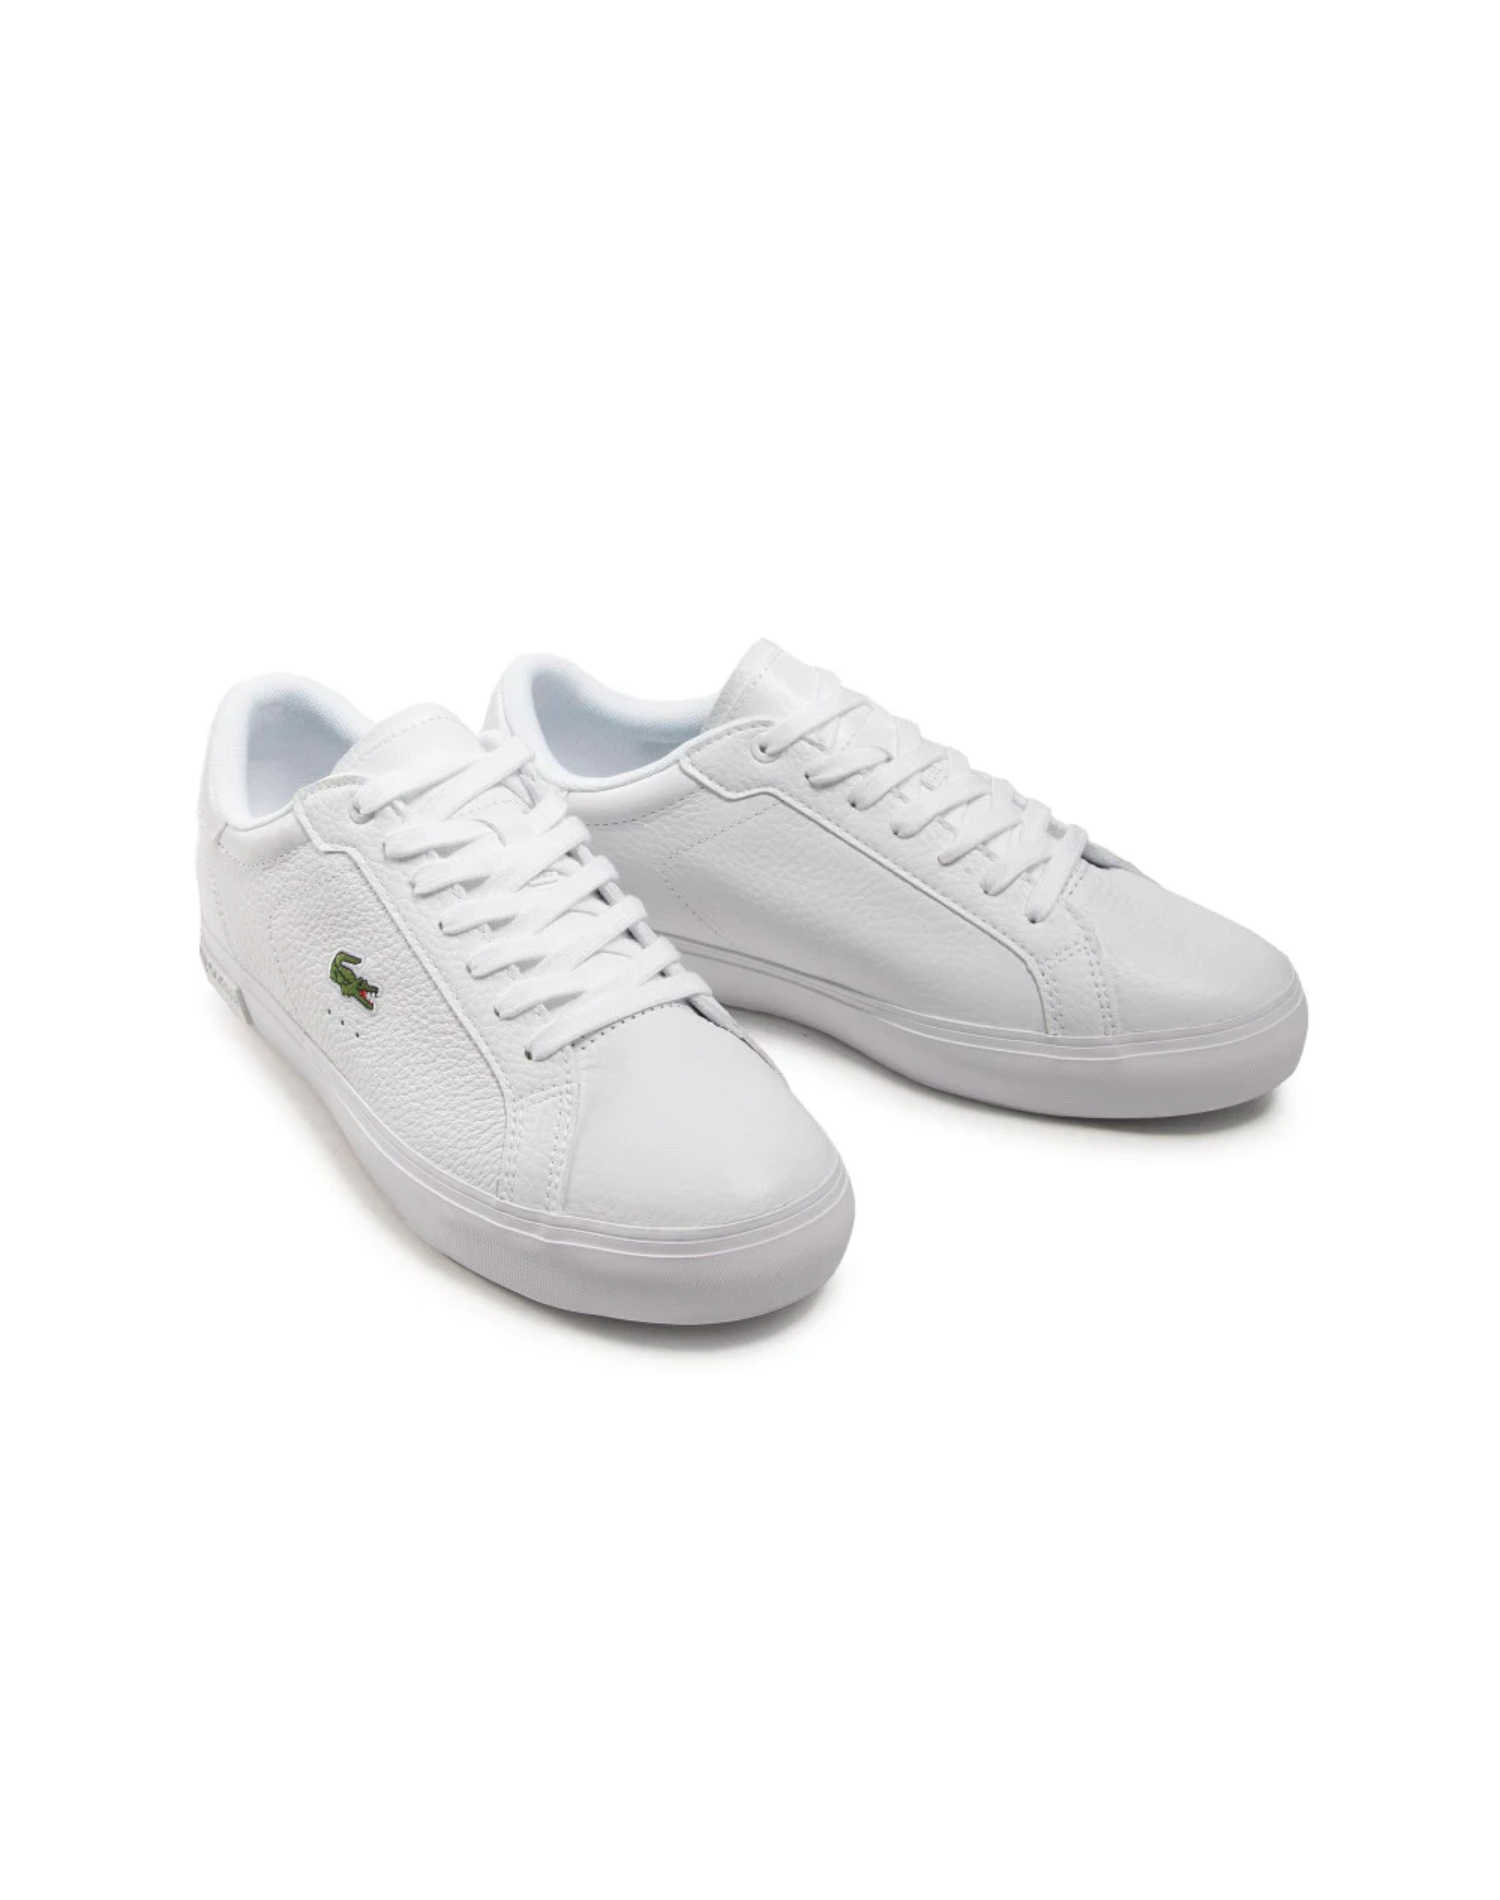 Lacoste - Powercourt 0721 2 SFA Shoe - White/White